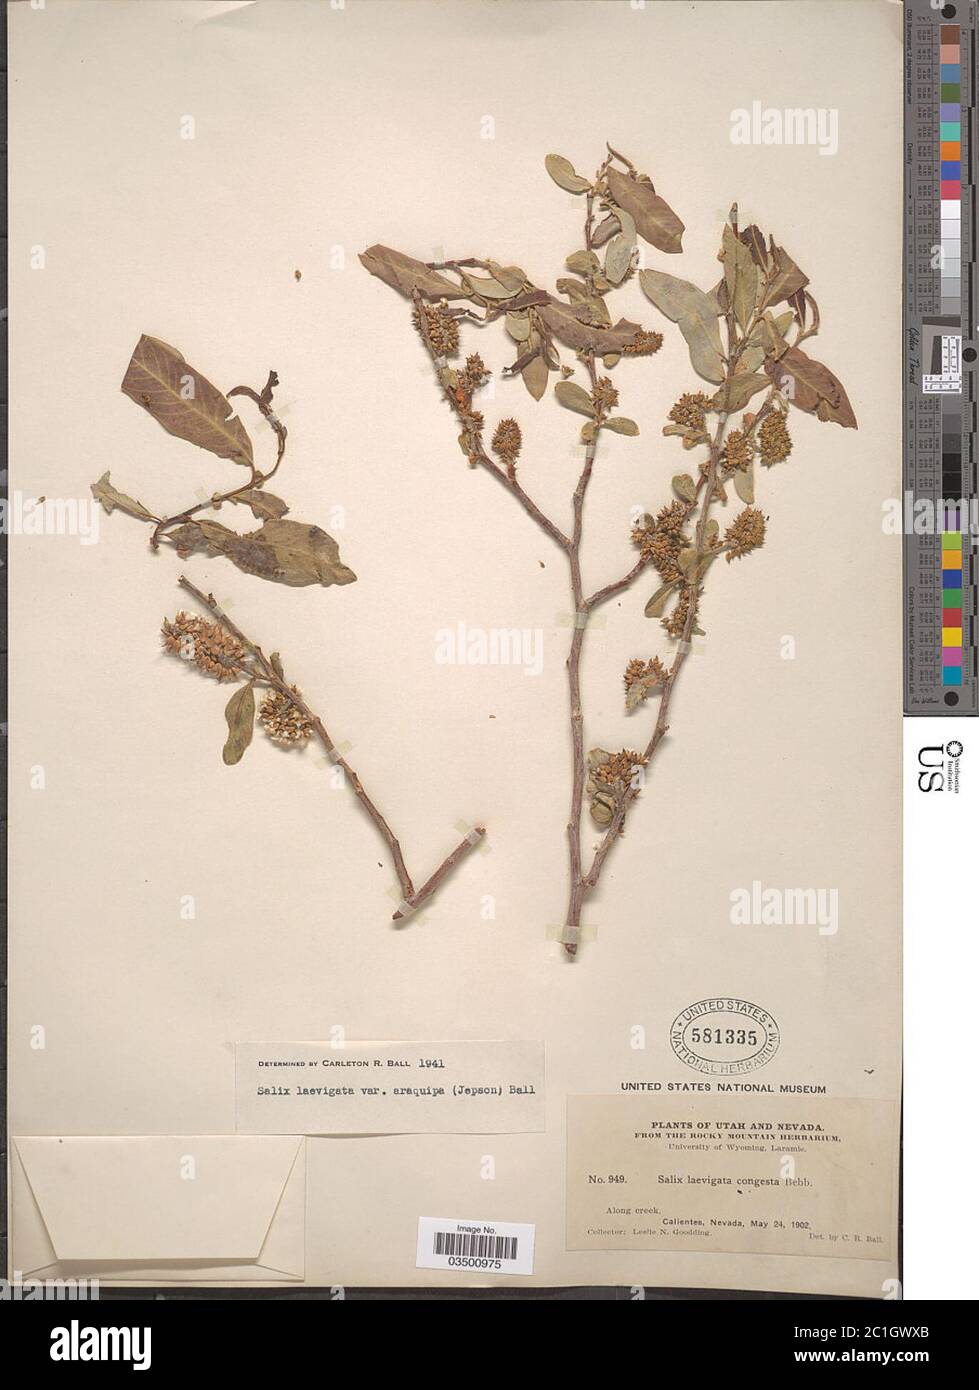 Salix laevigata var araquipa Bebb Salix laevigata var araquipa Bebb. Stock Photo